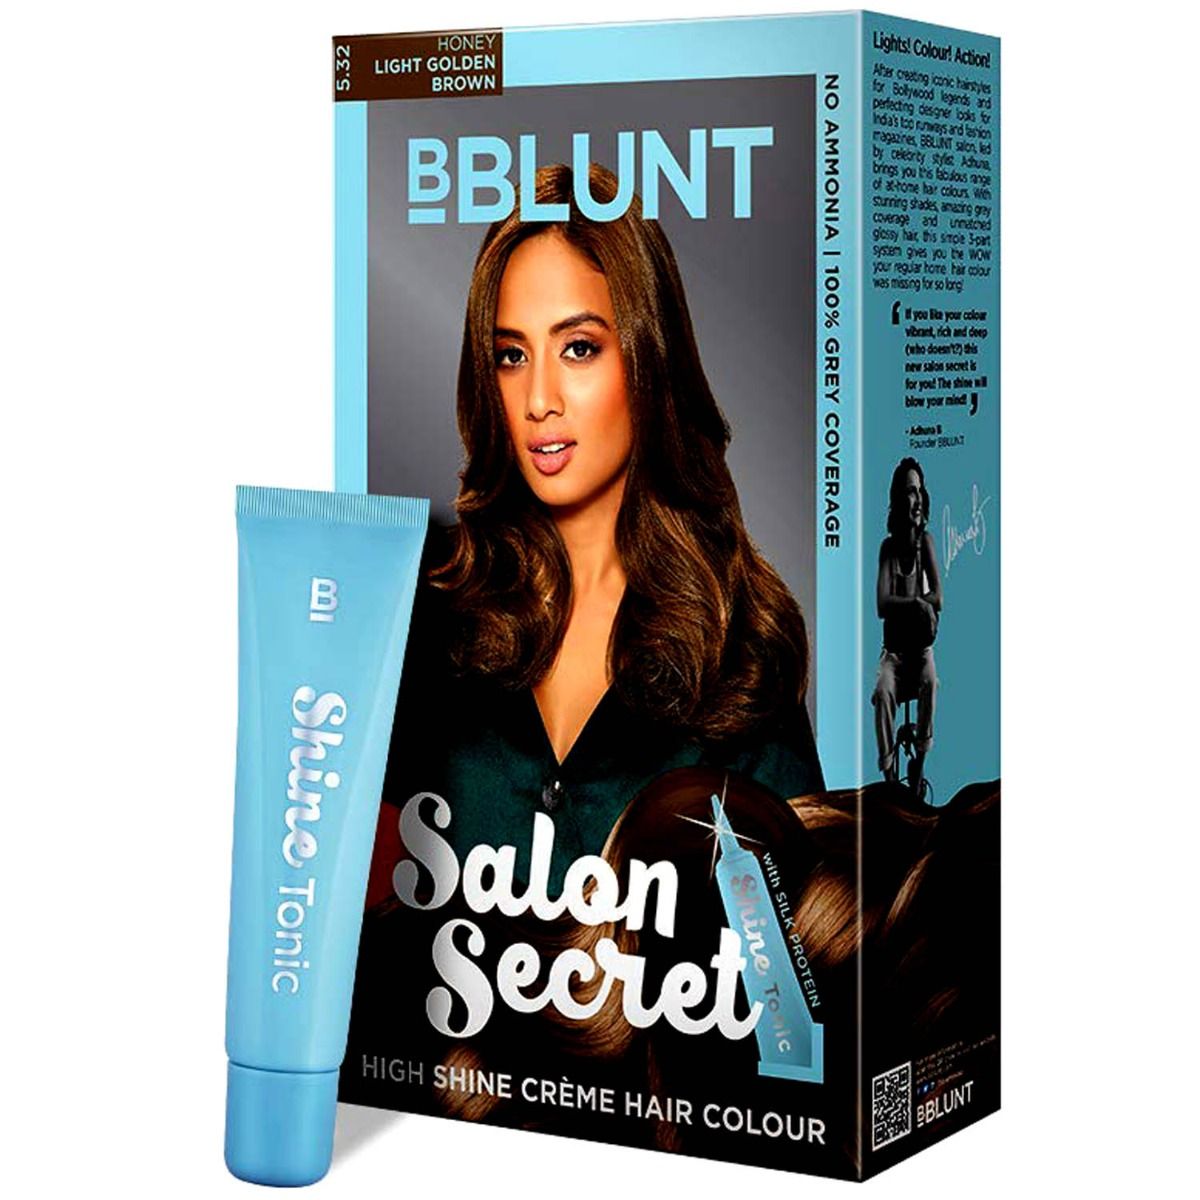 Buy BBLUNT Salon Secret High Shine Crème Hair Colour - Honey Light Golden Brown Online